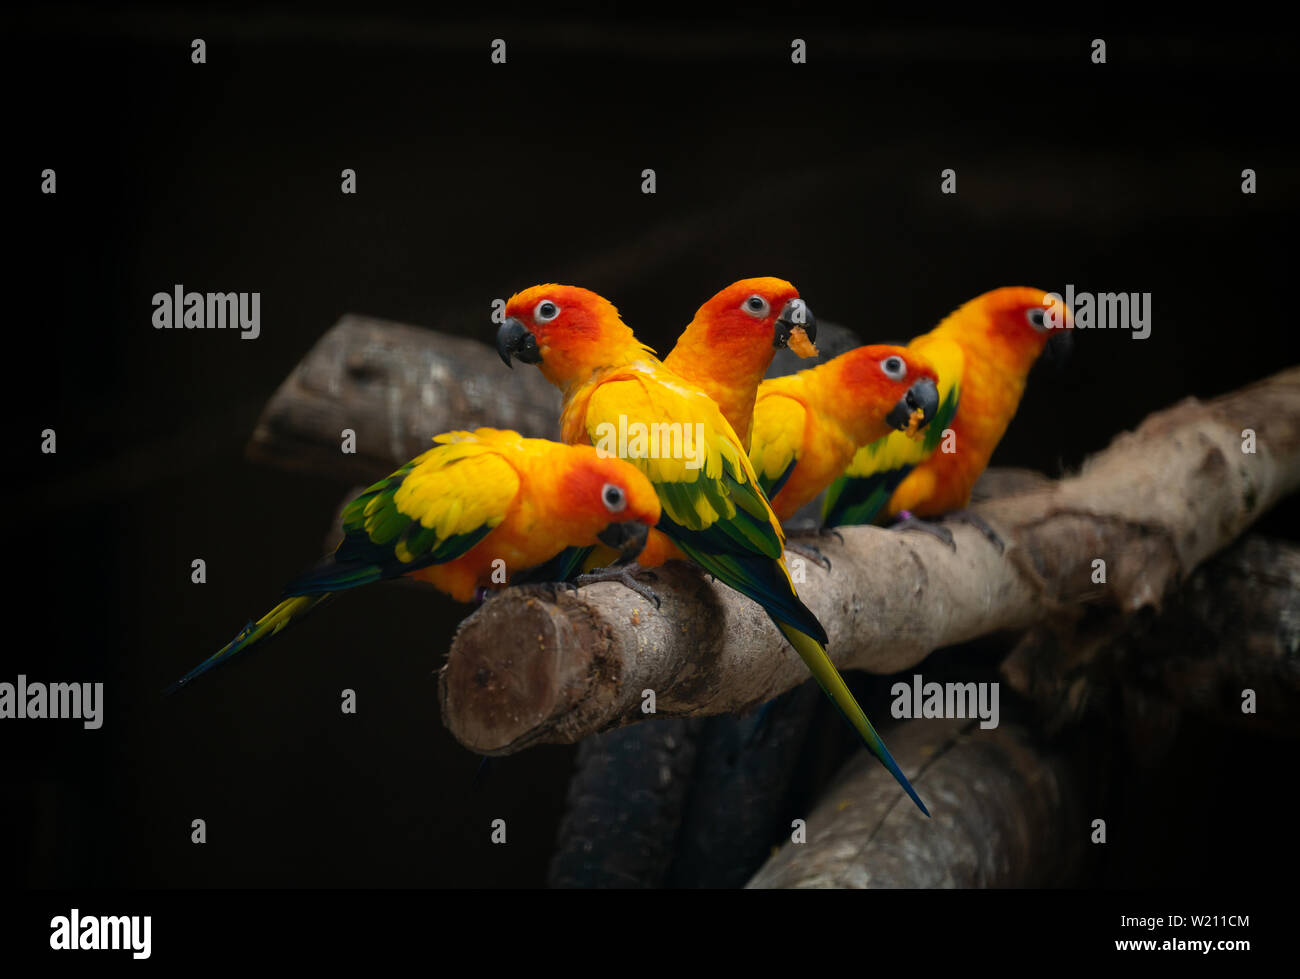 Groupe d'sunconure oiseau perroquet sur la perchaude dans fond sombre Banque D'Images